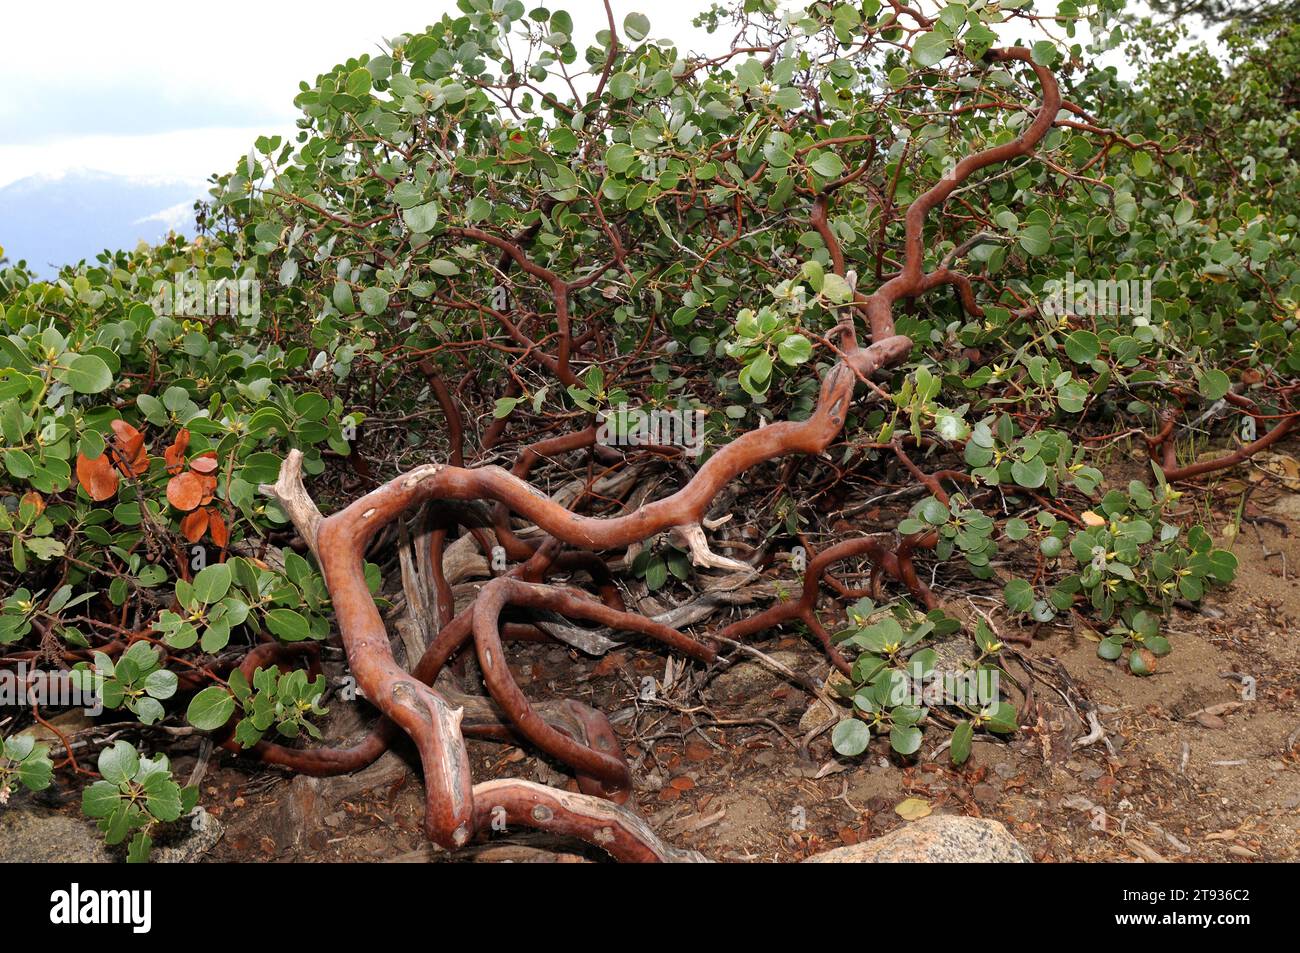 La manzanita comune o whiteleaf manzanita (Arctostaphylos manzanita) è un arbusto endemico della California. Questa foto è stata scattata nel Sequoia-Kings Canyon nati Foto Stock